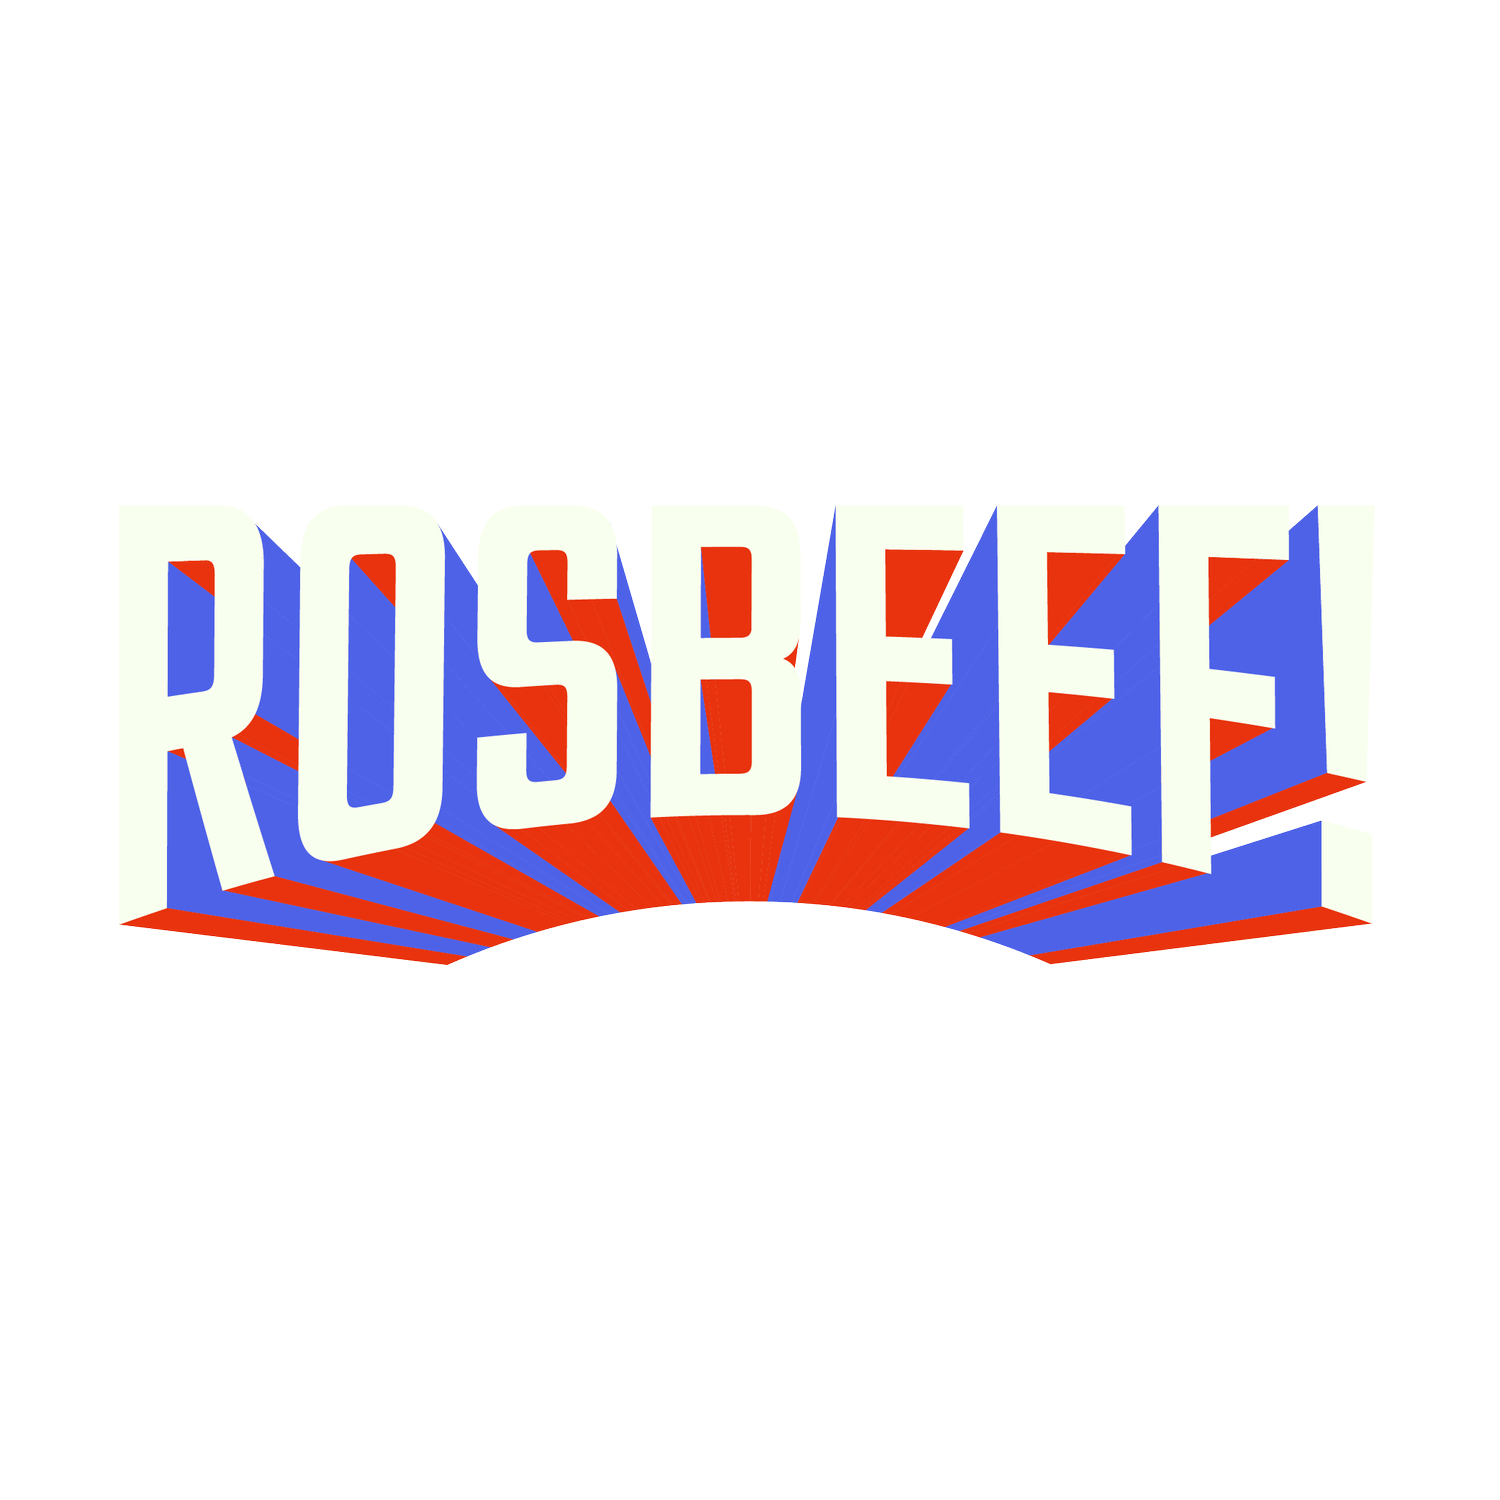 Rosbeef!